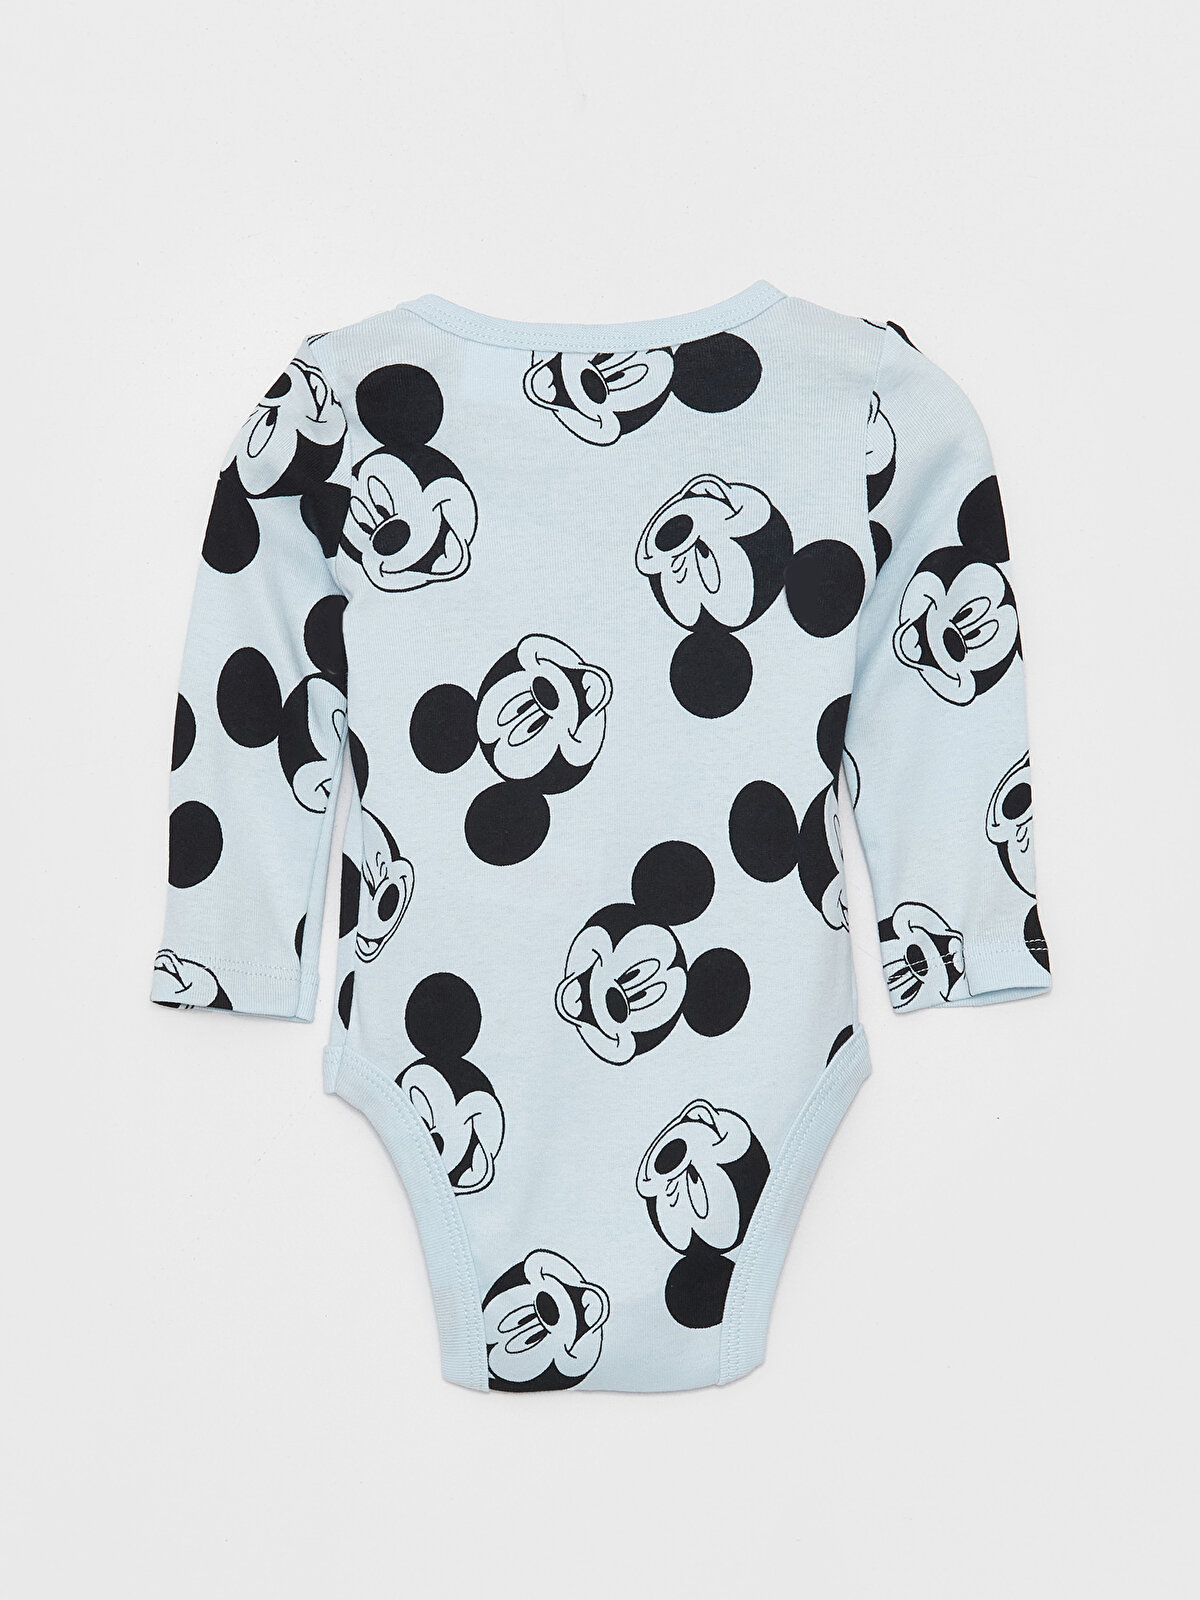 Crew Neck Long Sleeve Mickey Mouse Printed Baby Boy Snap-On Bodysuit  2-Piece -W39999Z1-FUX - W39999Z1-FUX - LC Waikiki